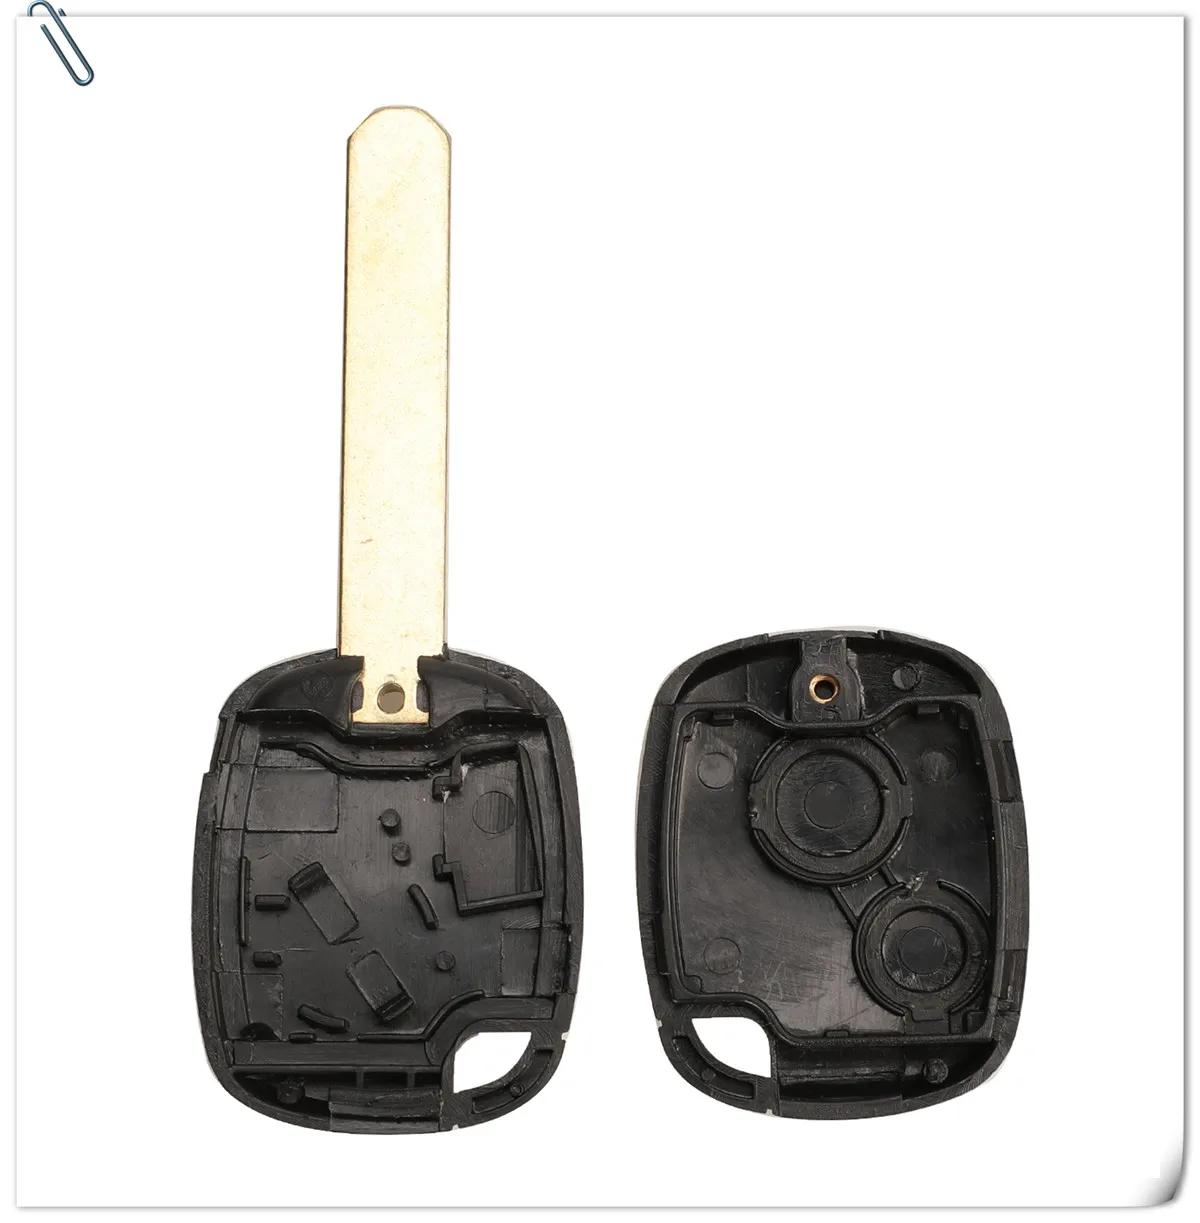 Jingyuqin 1/2 кнопки дистанционного ключа чехол для Honda CR-V Odyssey Fit, City c-ivic accord с кнопкой Pad